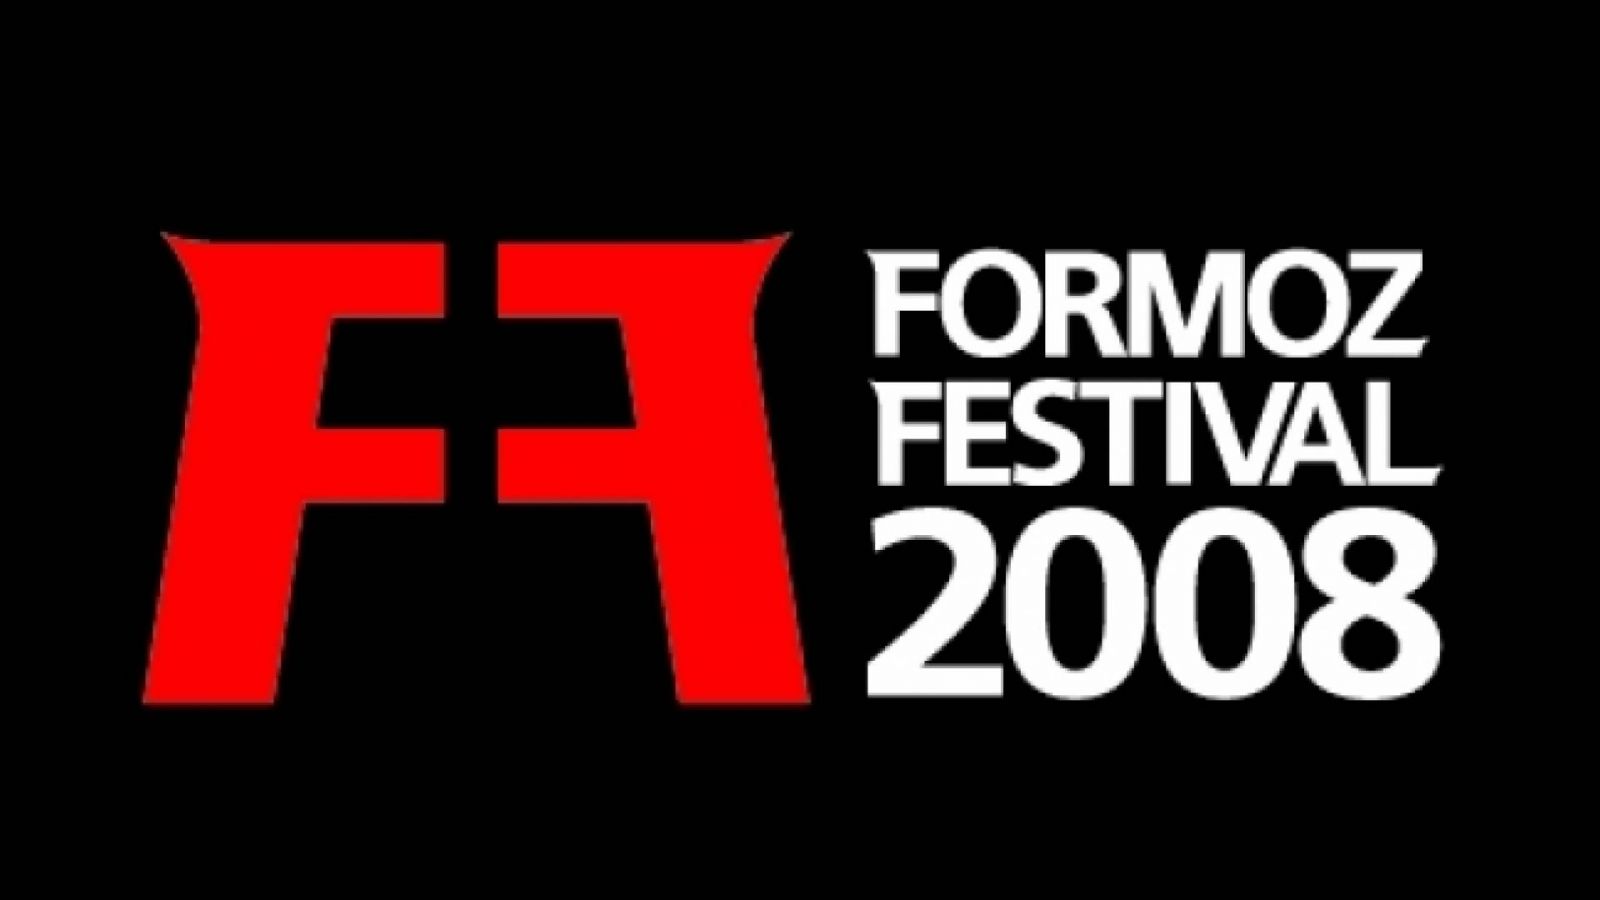 FORMOZ Festival - Parte 1 © Formoz Festival